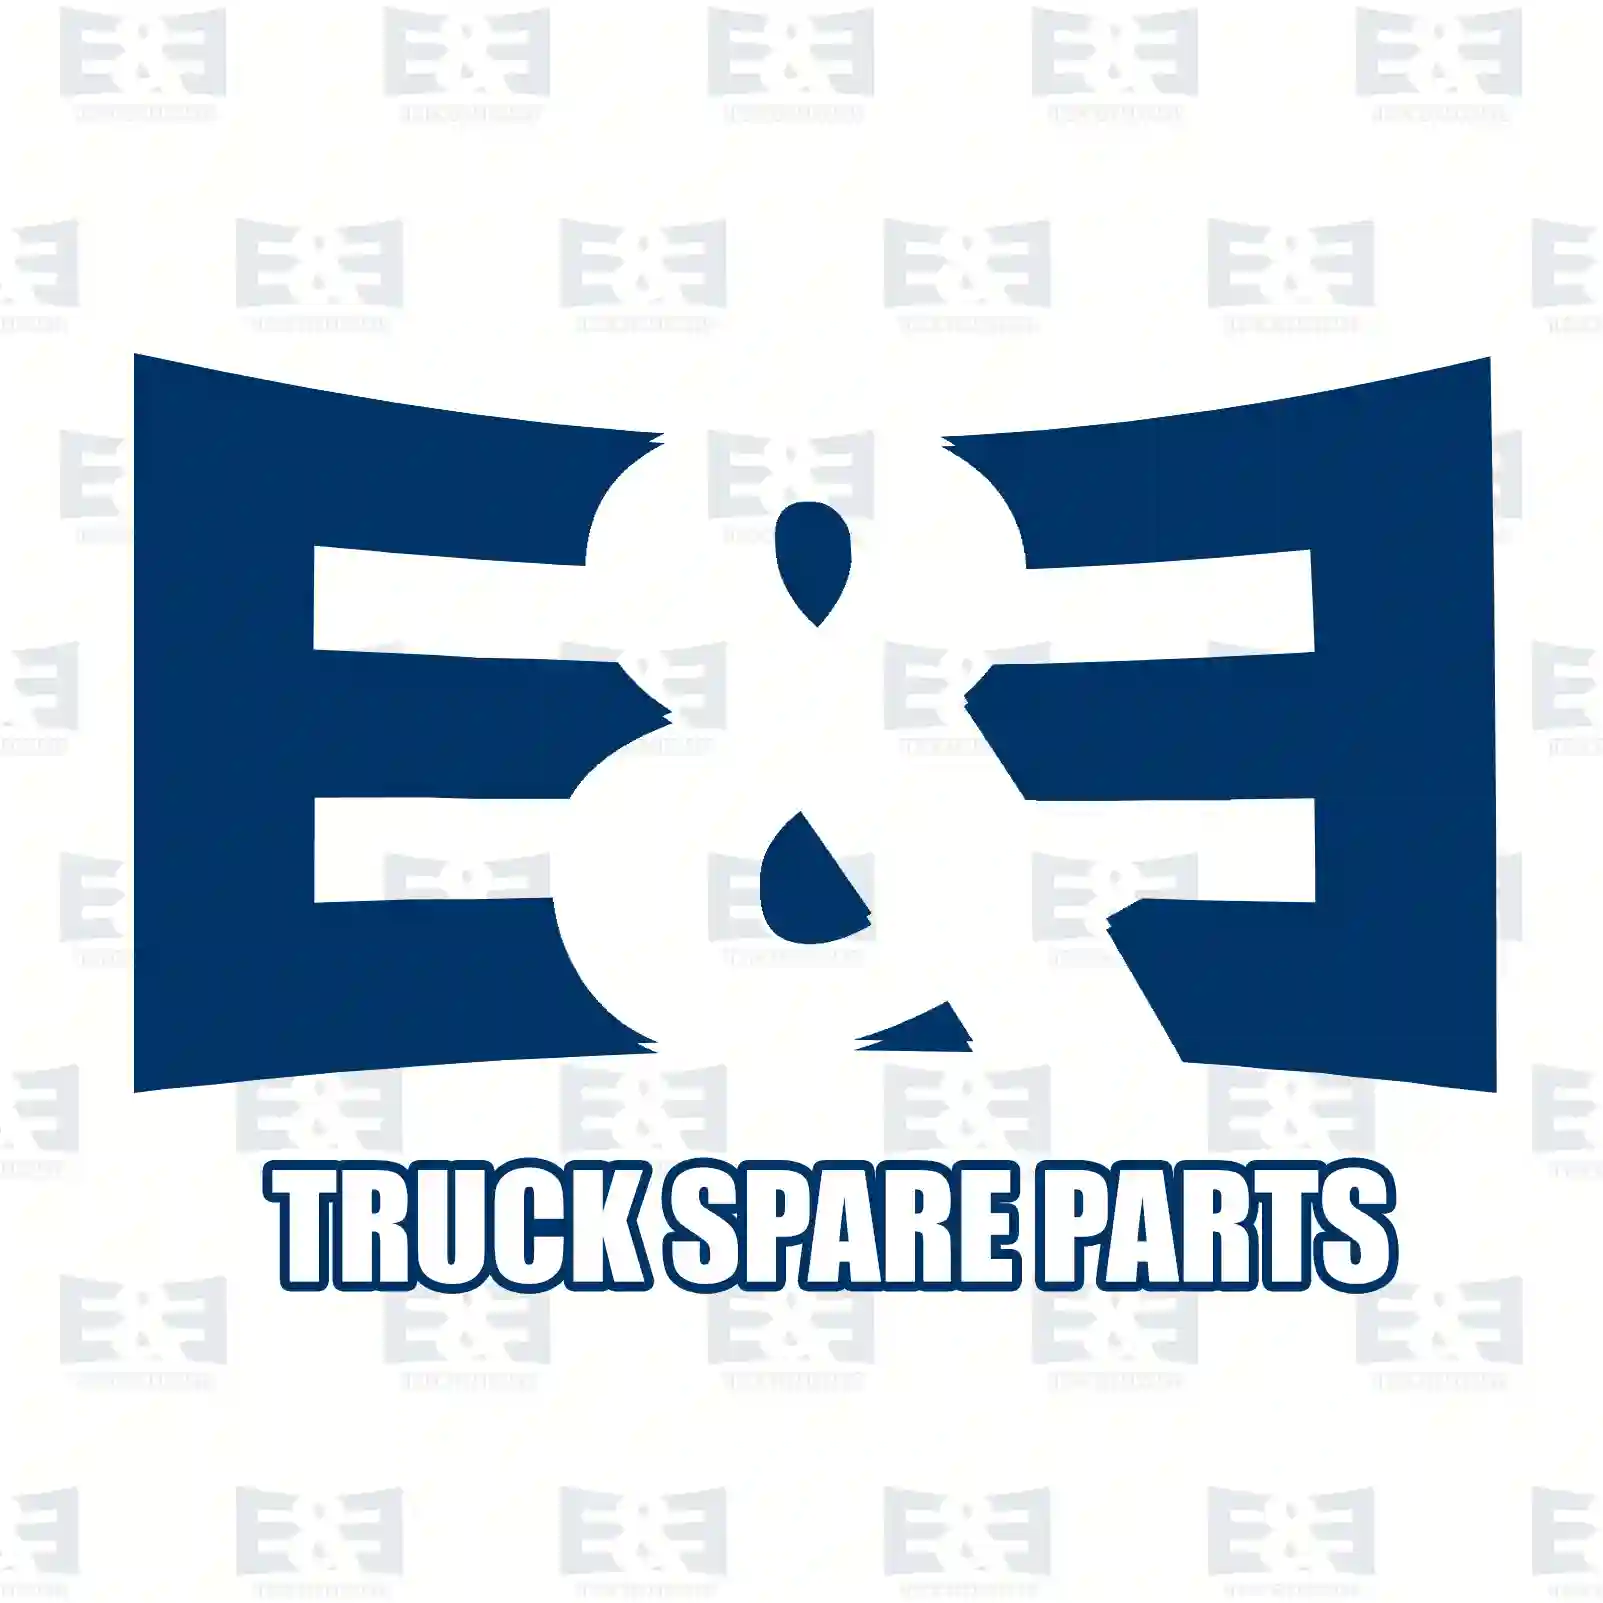 Cover, bumper, right, 2E2292739, 81416850130, 8141 ||  2E2292739 E&E Truck Spare Parts | Truck Spare Parts, Auotomotive Spare Parts Cover, bumper, right, 2E2292739, 81416850130, 8141 ||  2E2292739 E&E Truck Spare Parts | Truck Spare Parts, Auotomotive Spare Parts